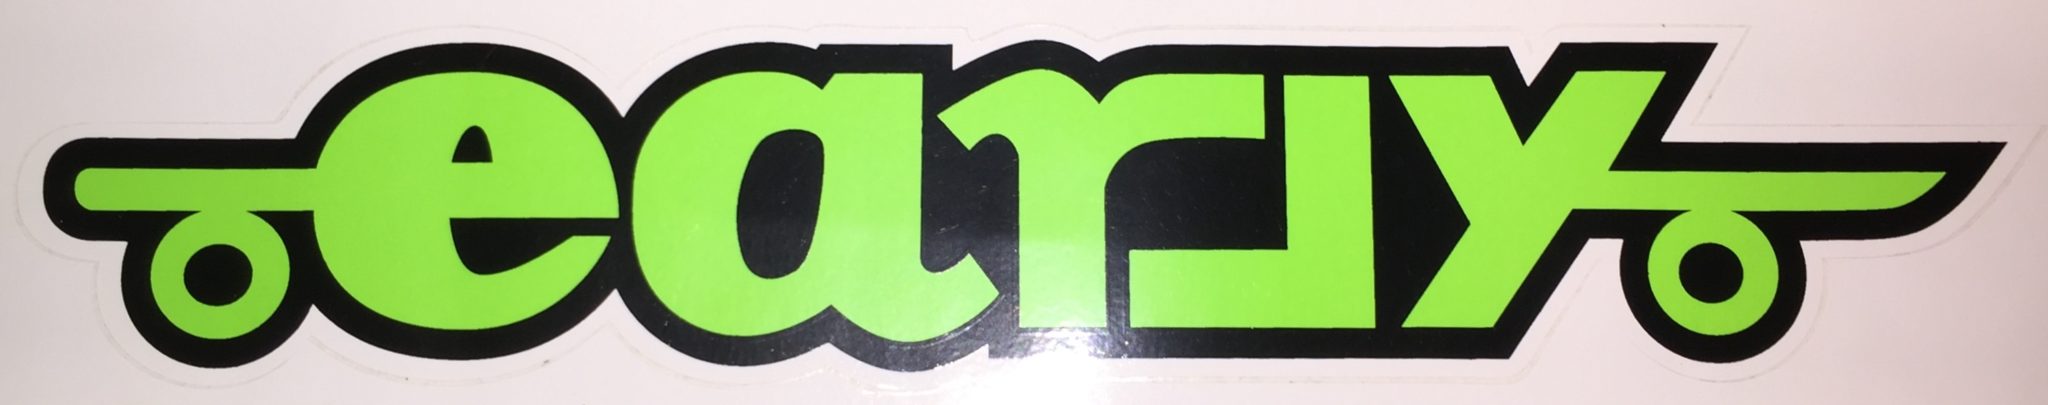 Early Skateboards Logo Sticker